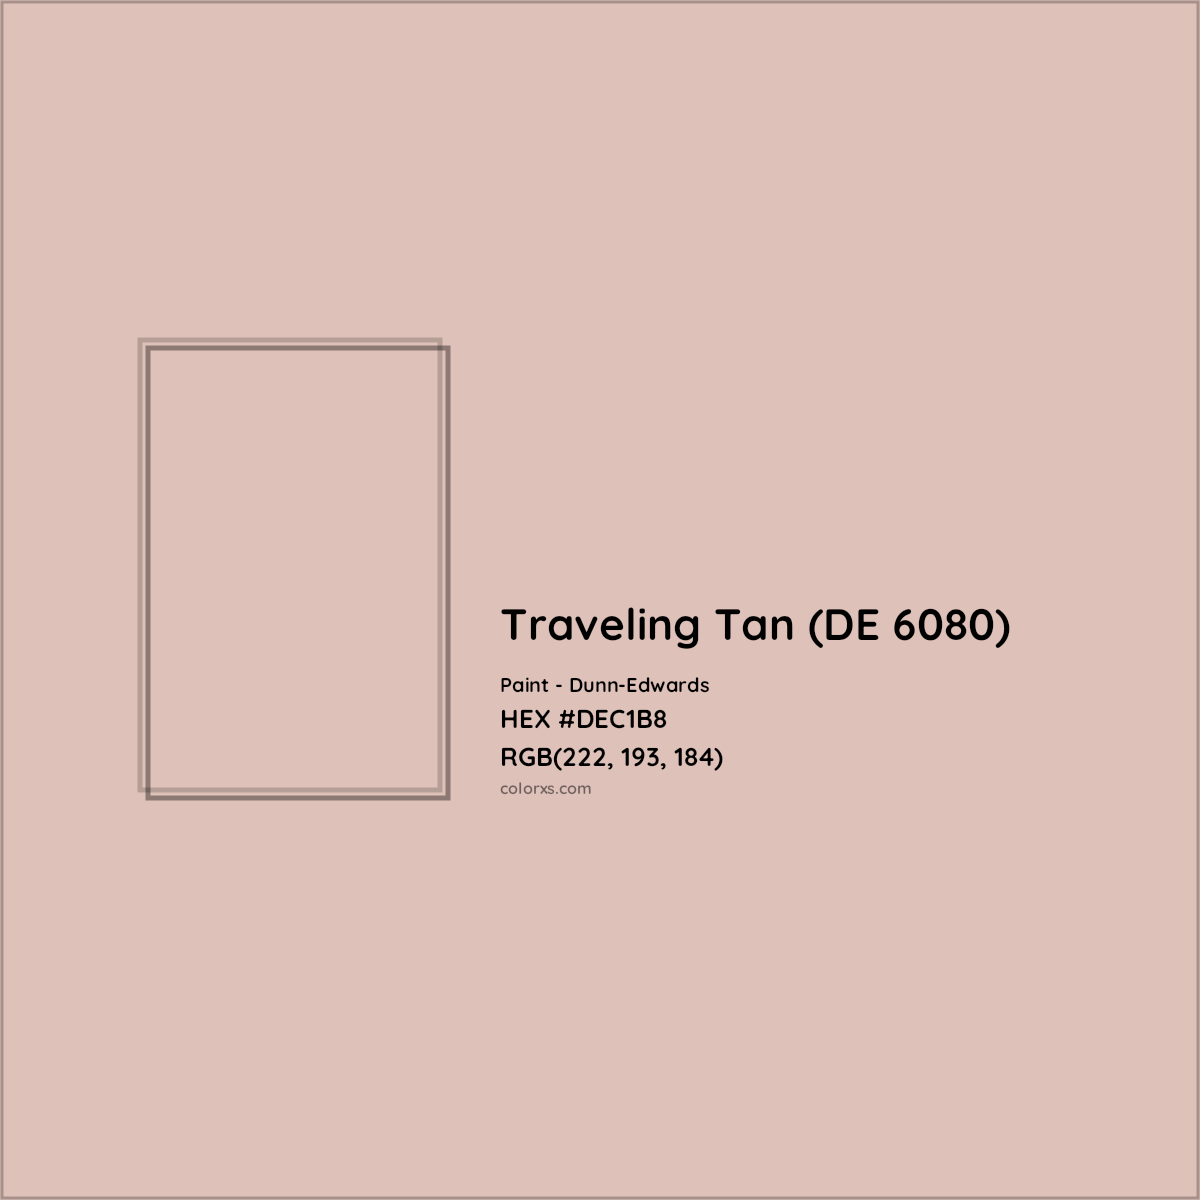 HEX #DEC1B8 Traveling Tan (DE 6080) Paint Dunn-Edwards - Color Code